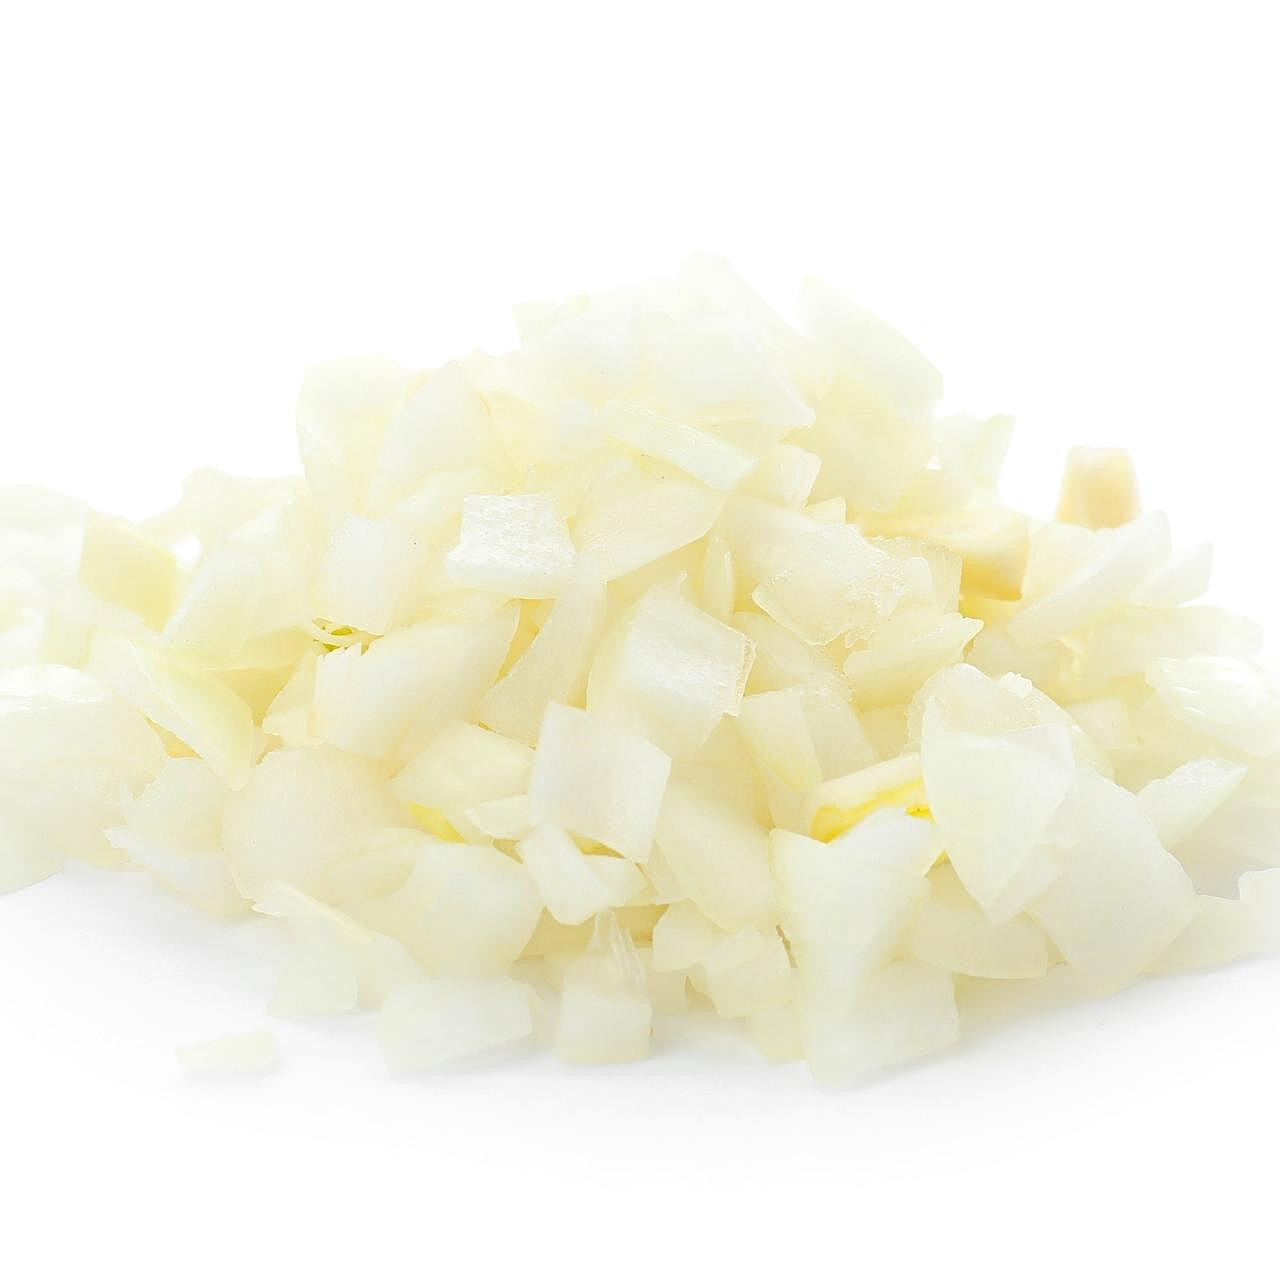 yellow onion chopped